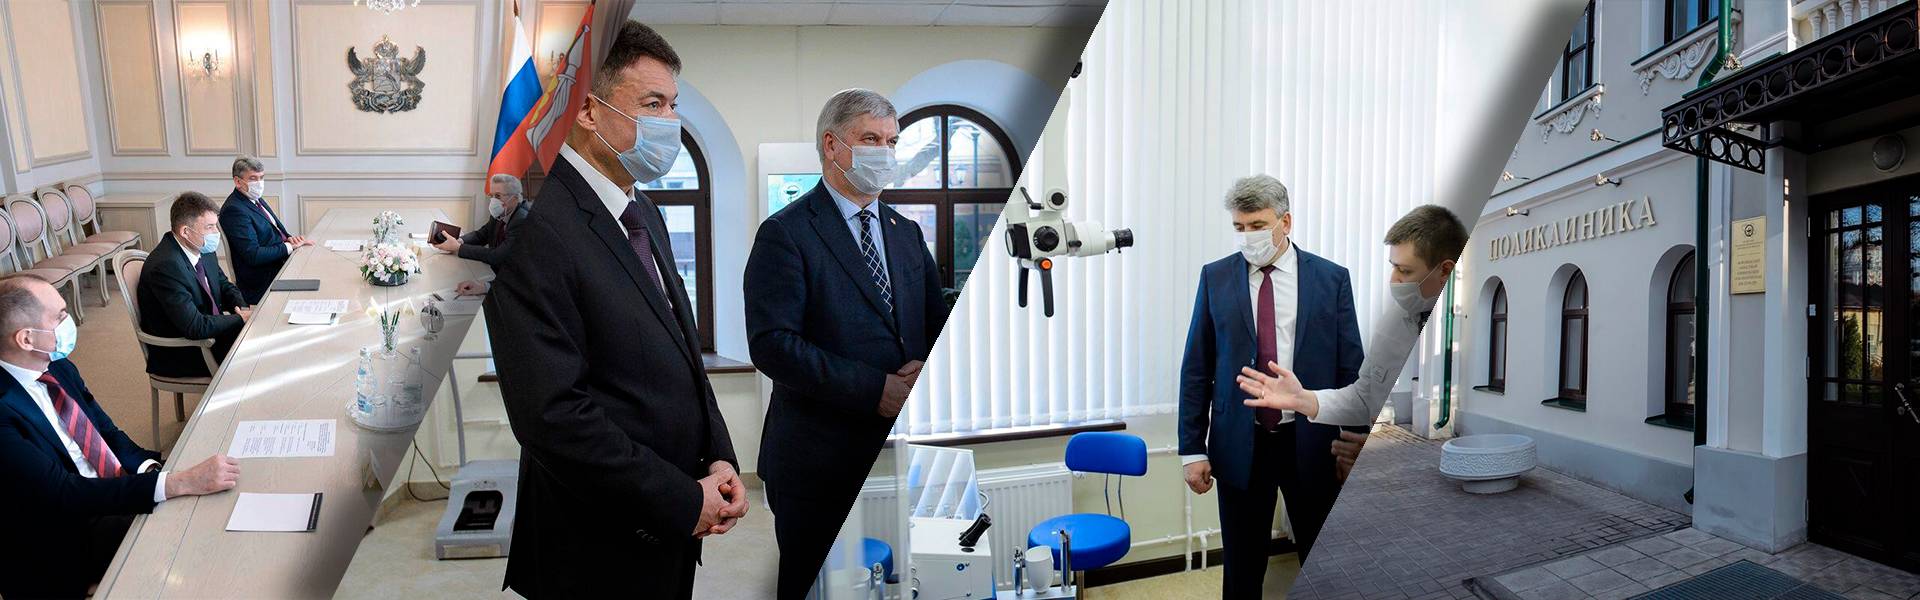 В Воронеже открывают новую современную поликлинику для онкопациентов